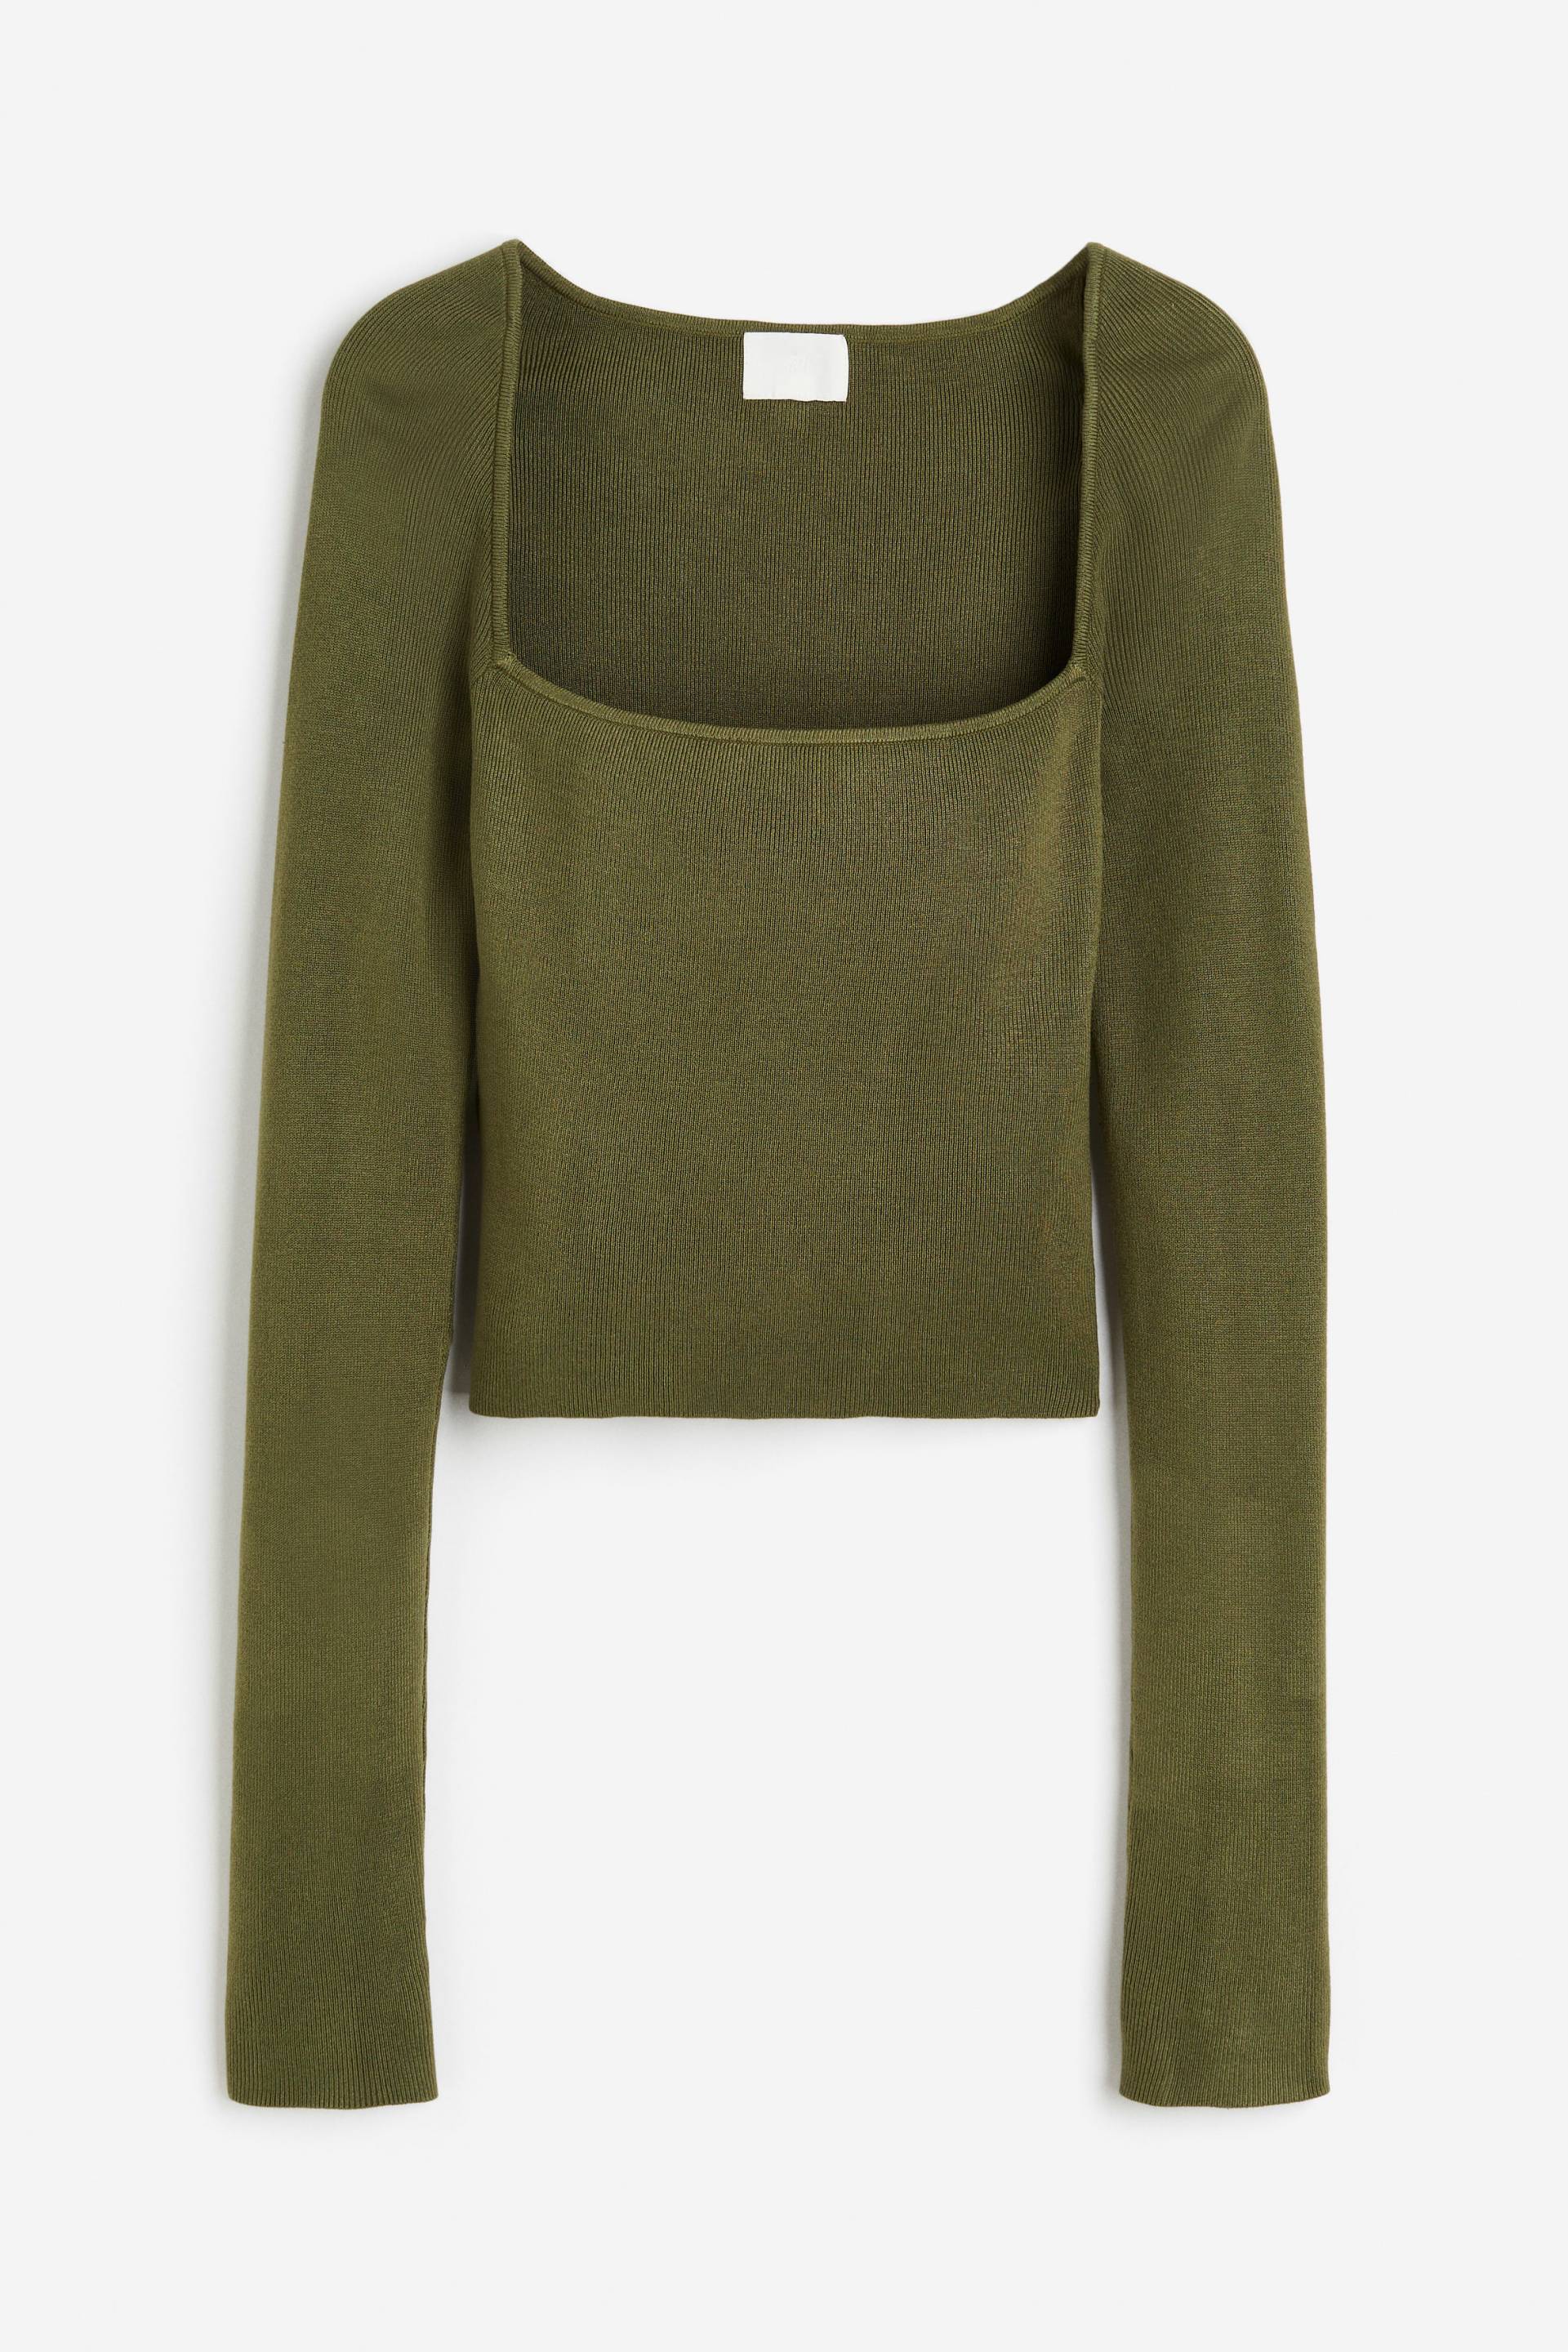 H&M Crop-Shirt mit eckigem Ausschnitt Dunkles Khakigrün, Tops in Größe M. Farbe: Dark khaki green von H&M